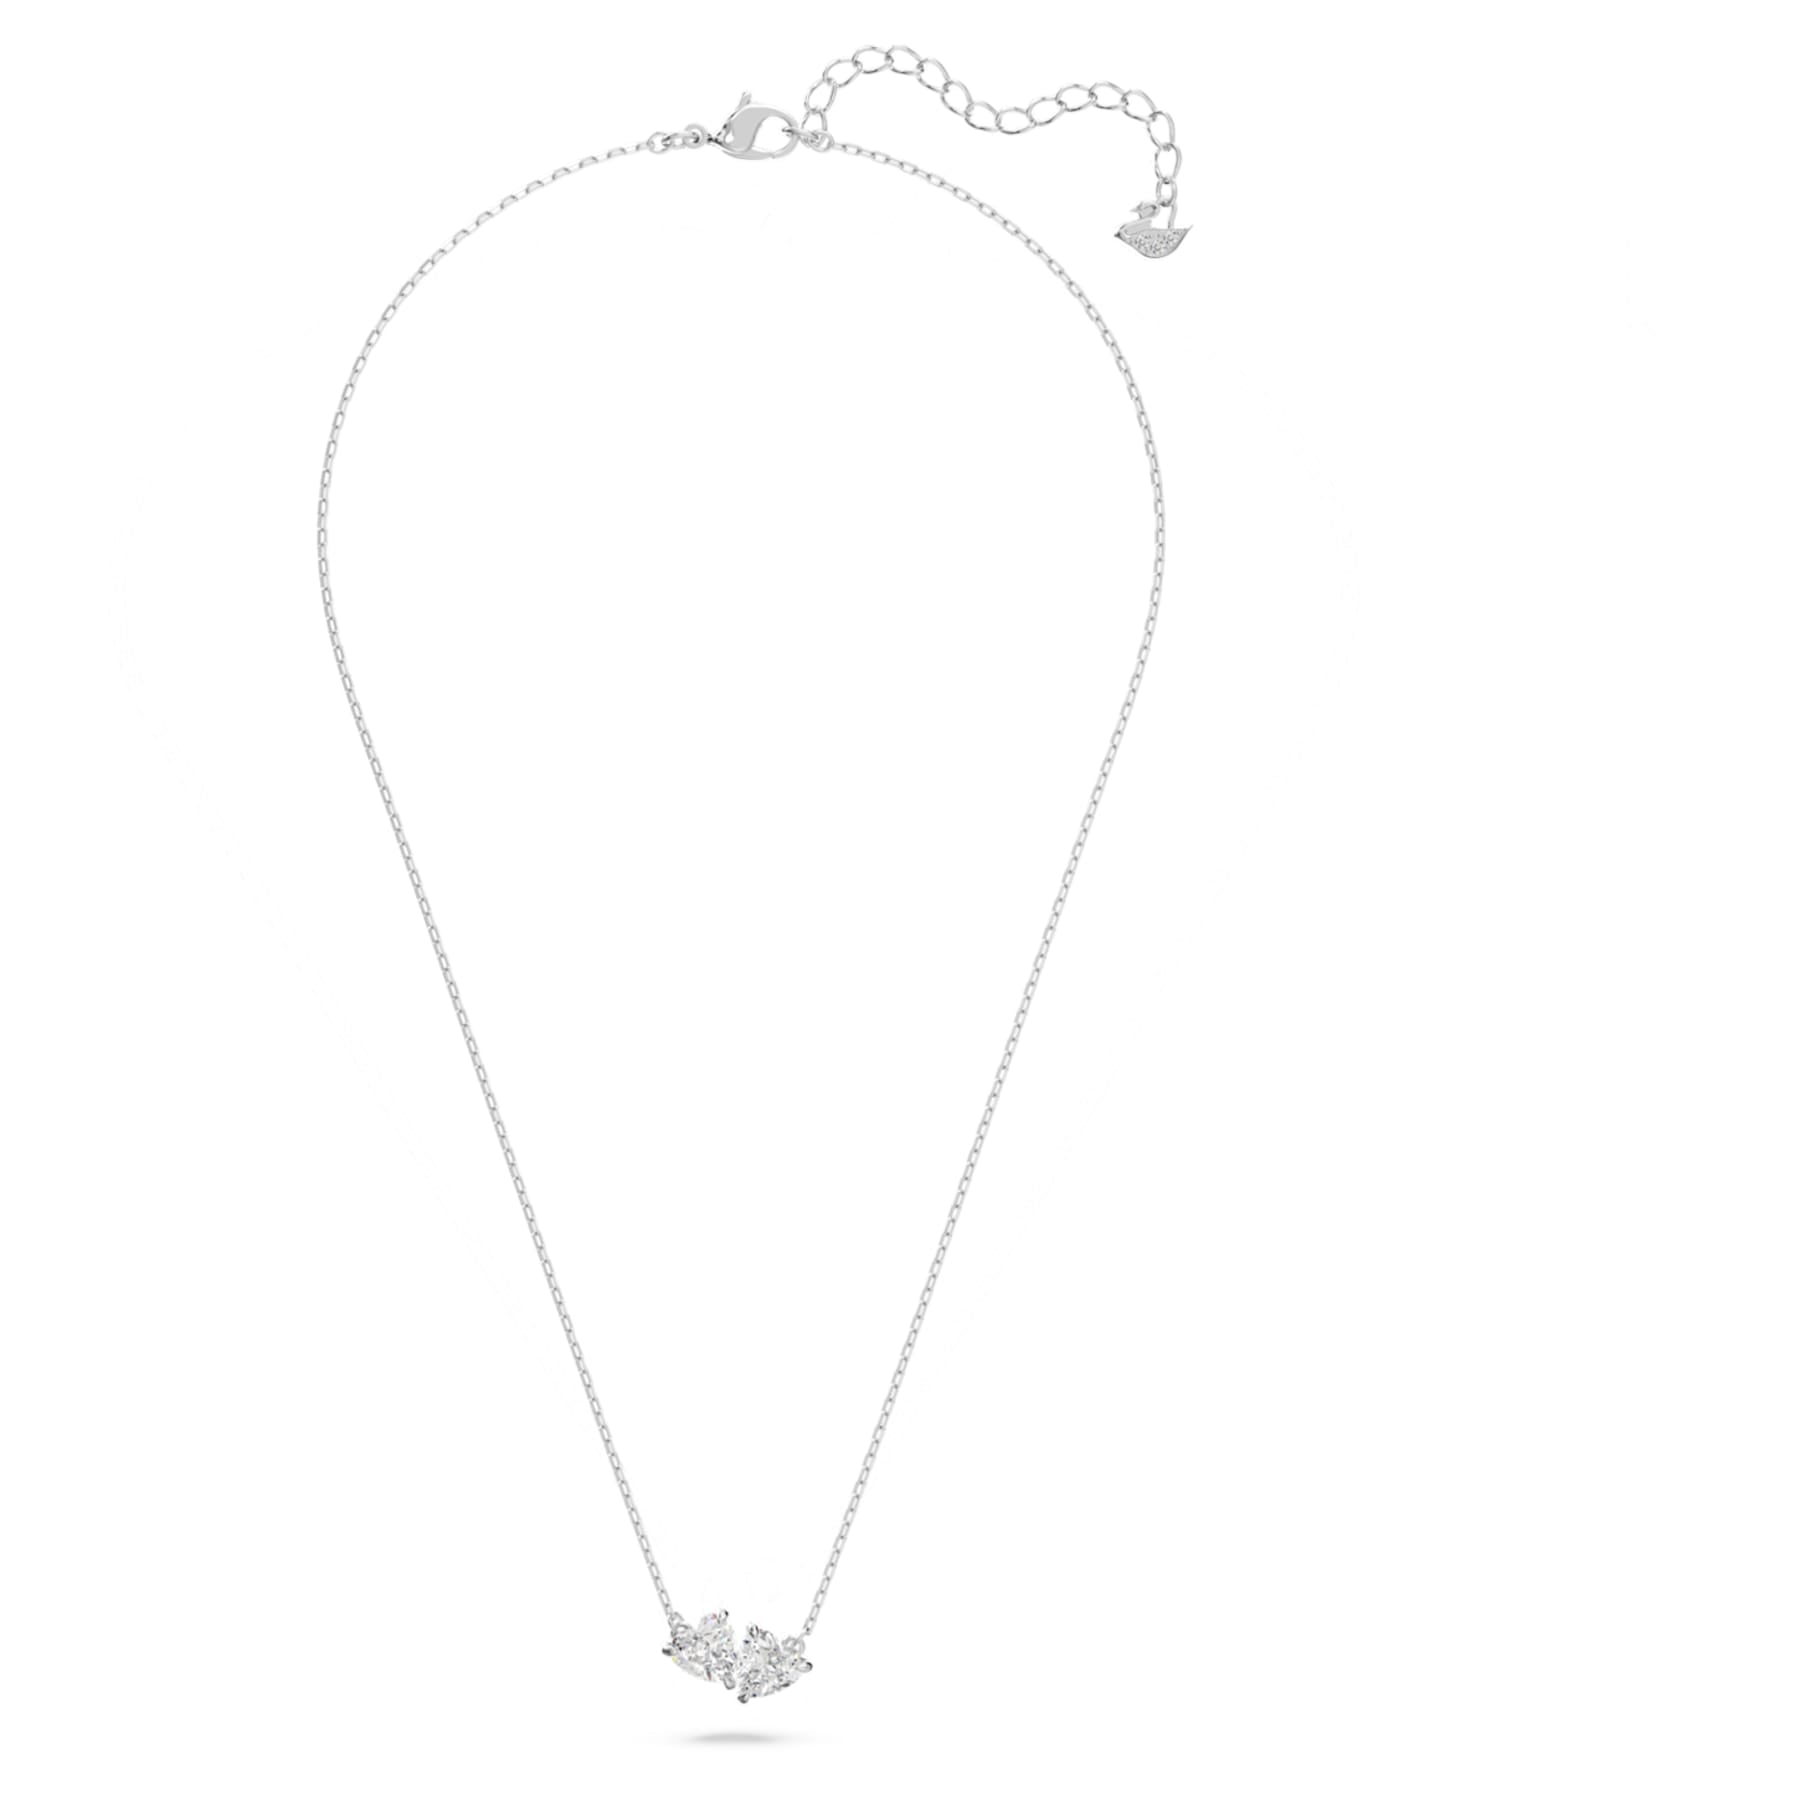 Attract – Weißes Silber – Herz – Halskette – Swarovski